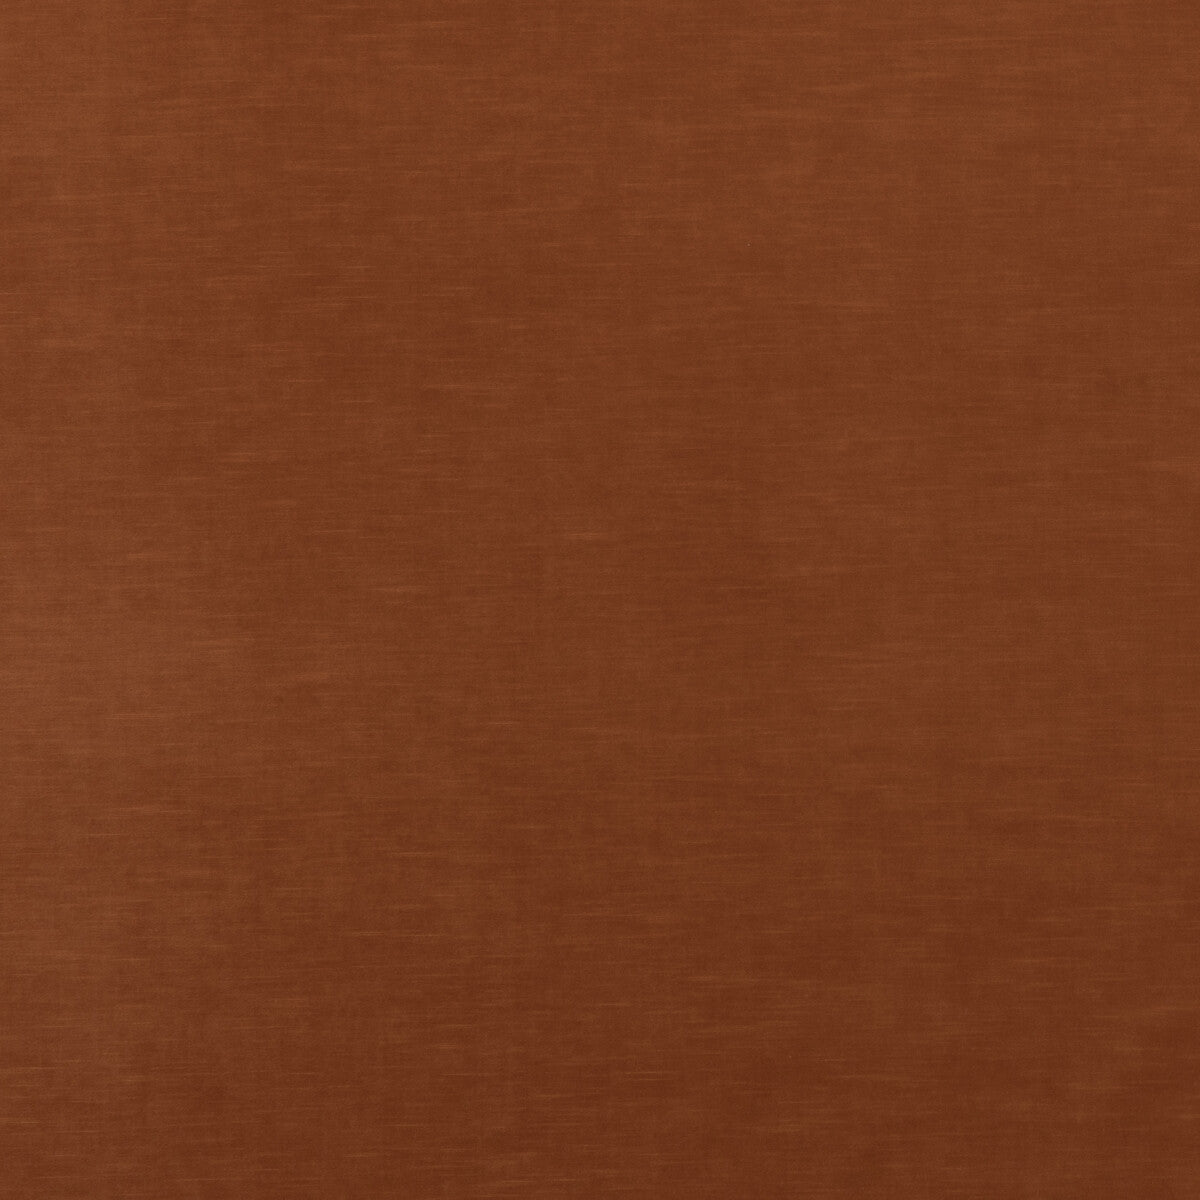 Quintessential Velvet fabric in tawny color - pattern ED85359.344.0 - by Threads in the Quintessential Velvet collection